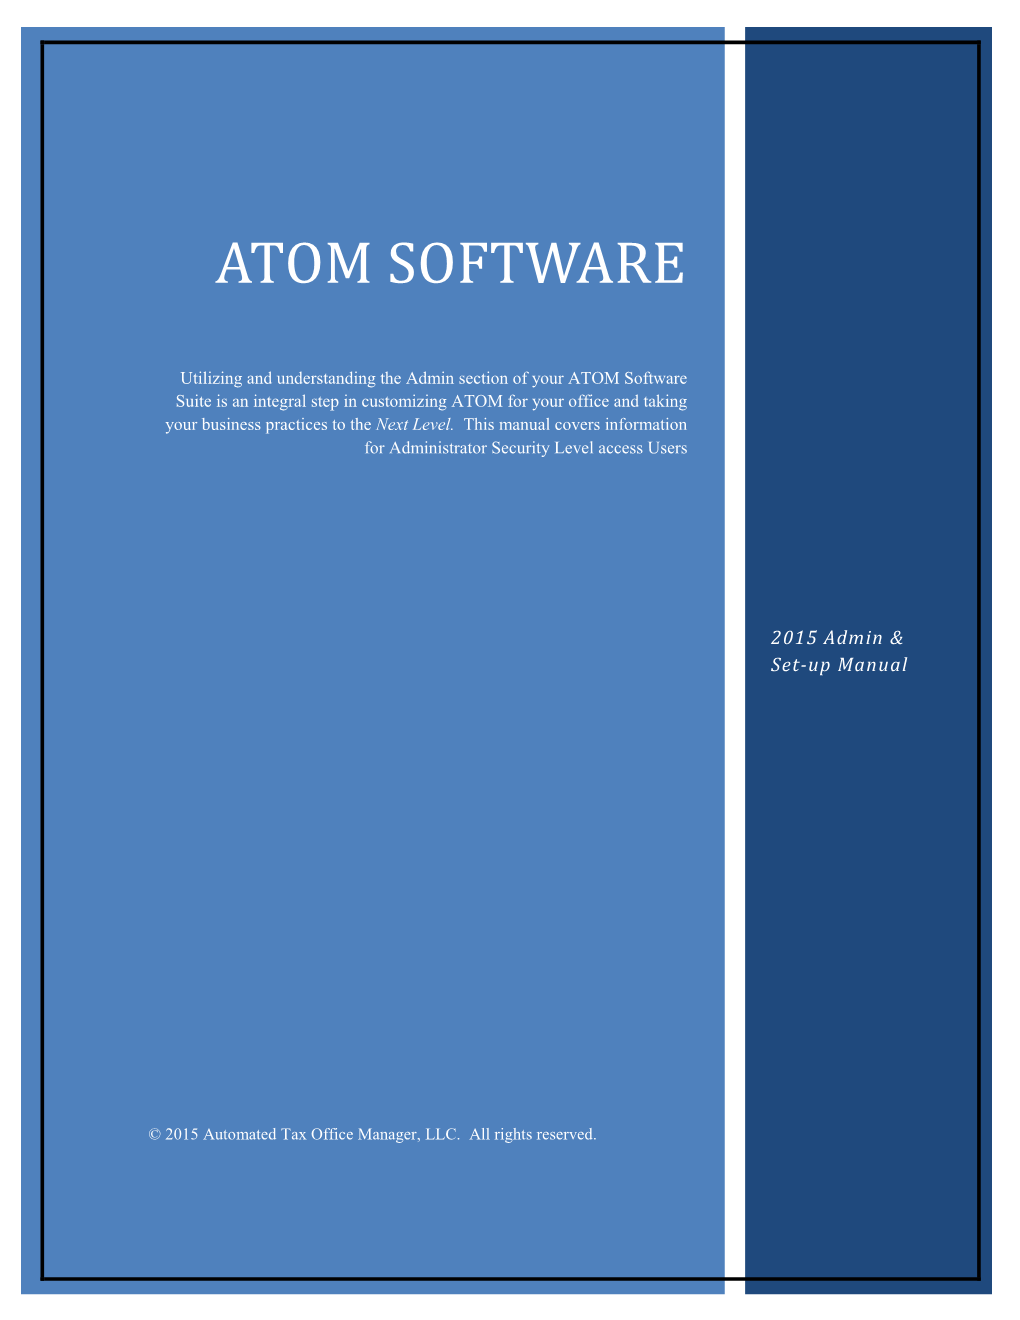 Atom Software